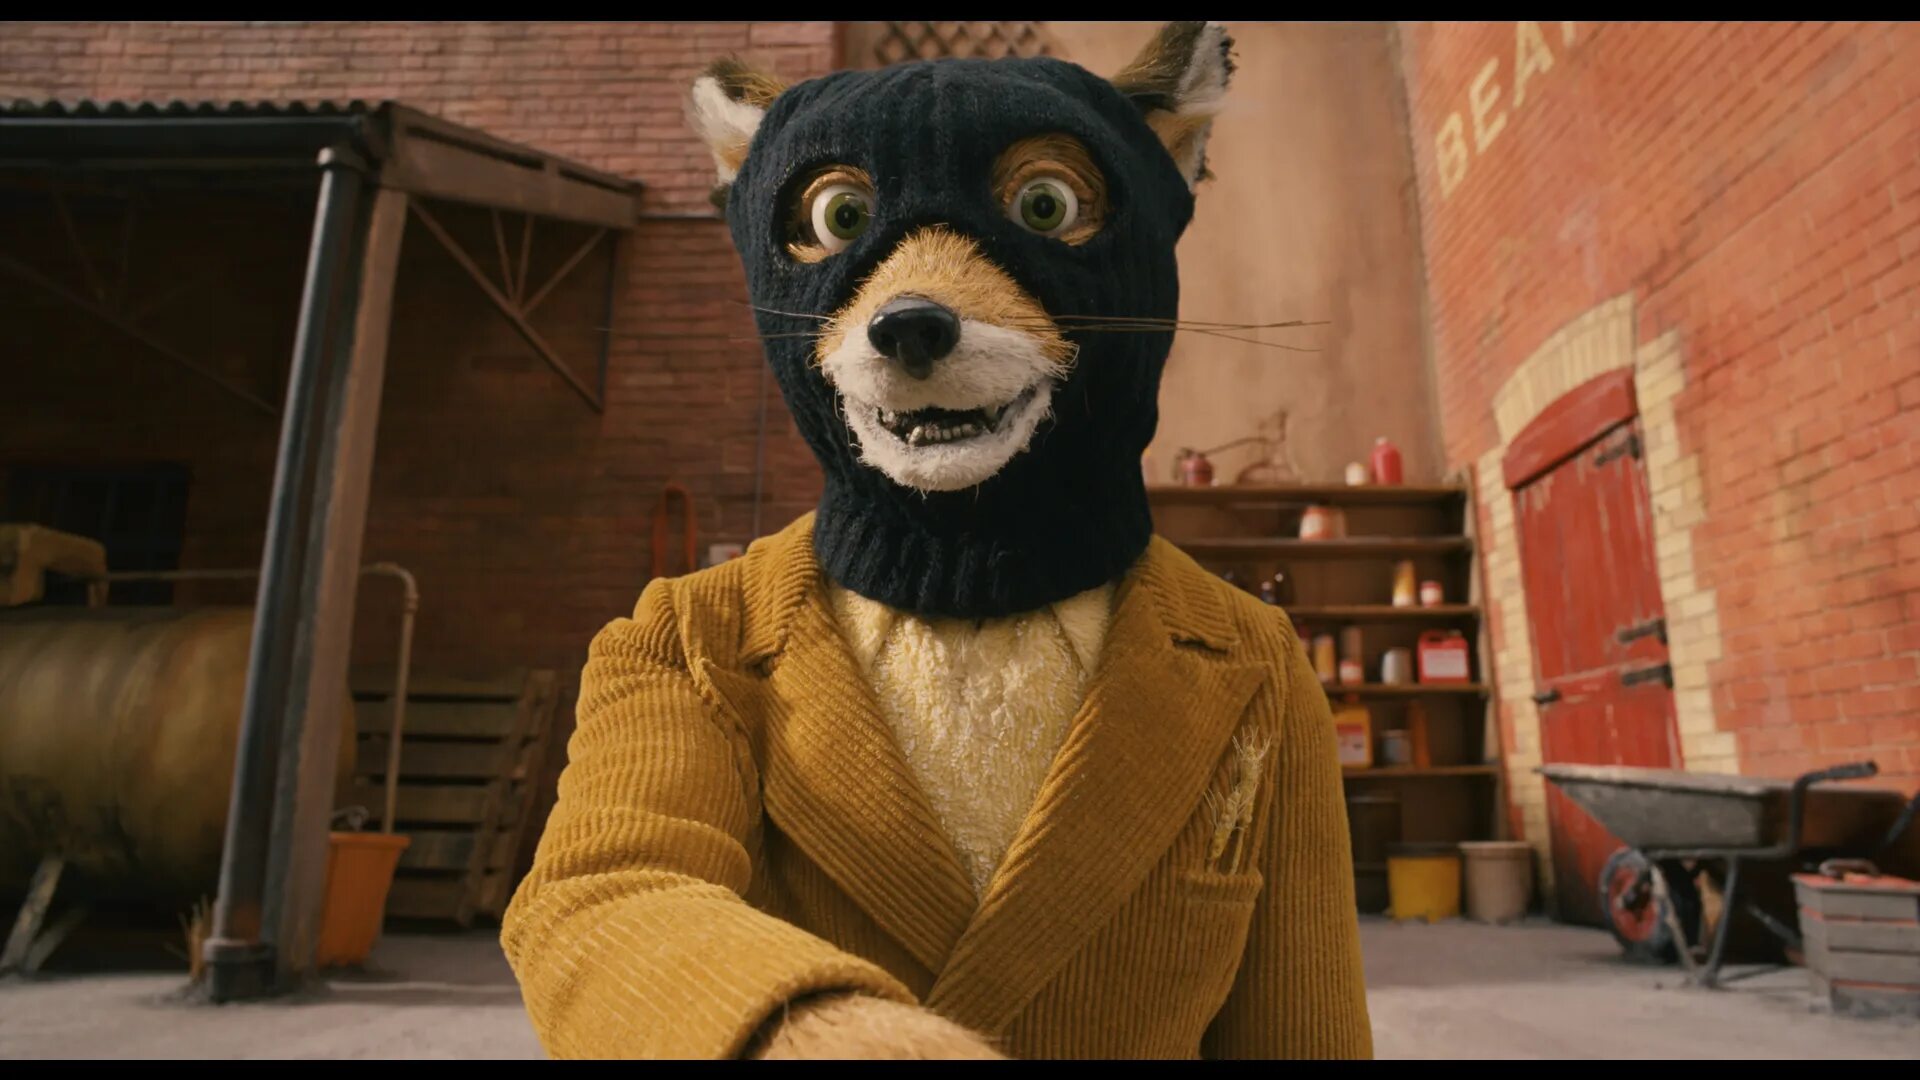 Бесподобный Мистер Фокс. Уэс Андерсон бесподобный Мистер Фокс. Бесподобный Мистер Фокс / fantastic Mr. Fox. Tpof fox